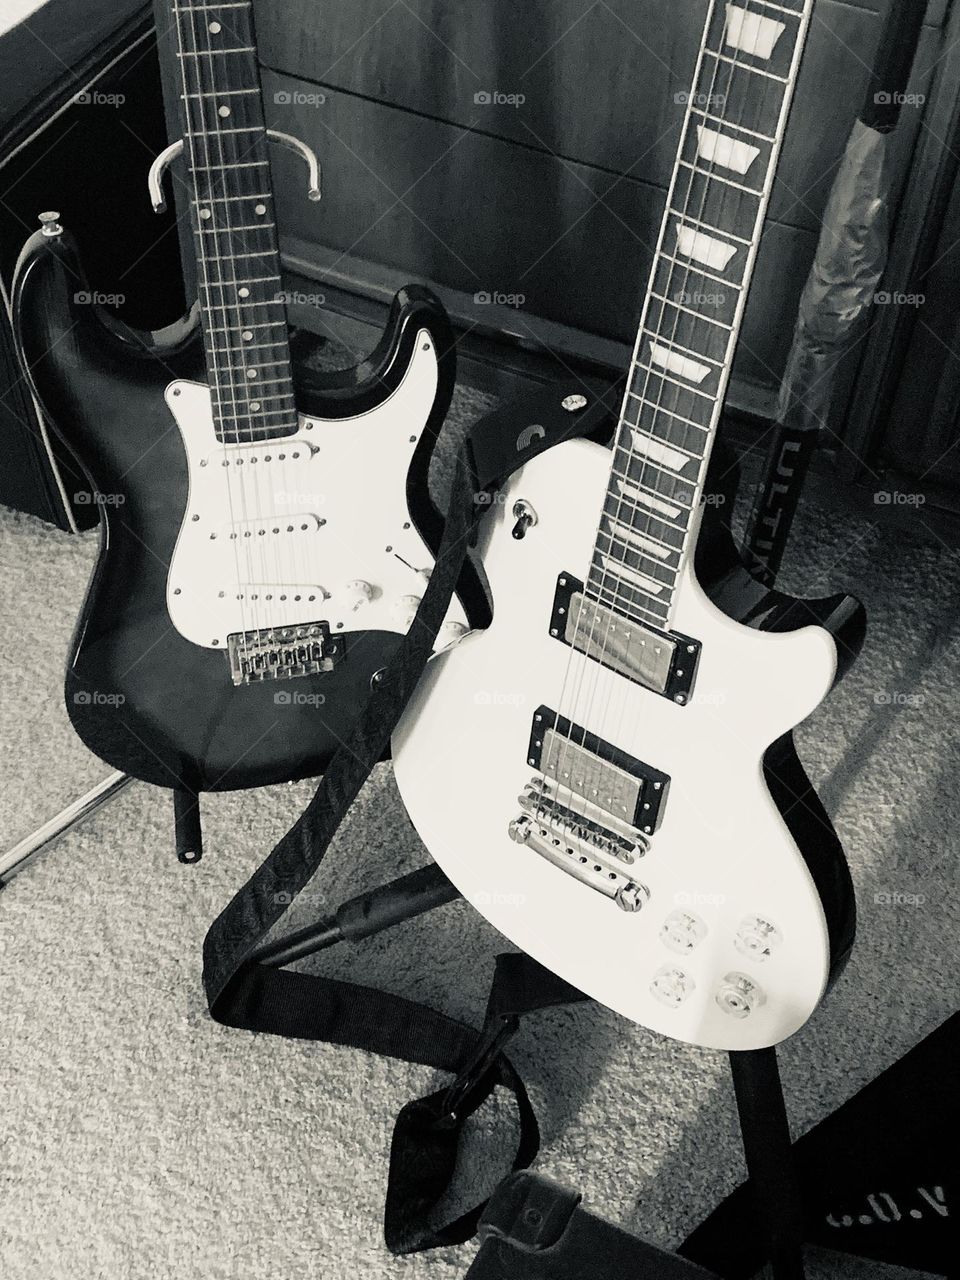 More guitars